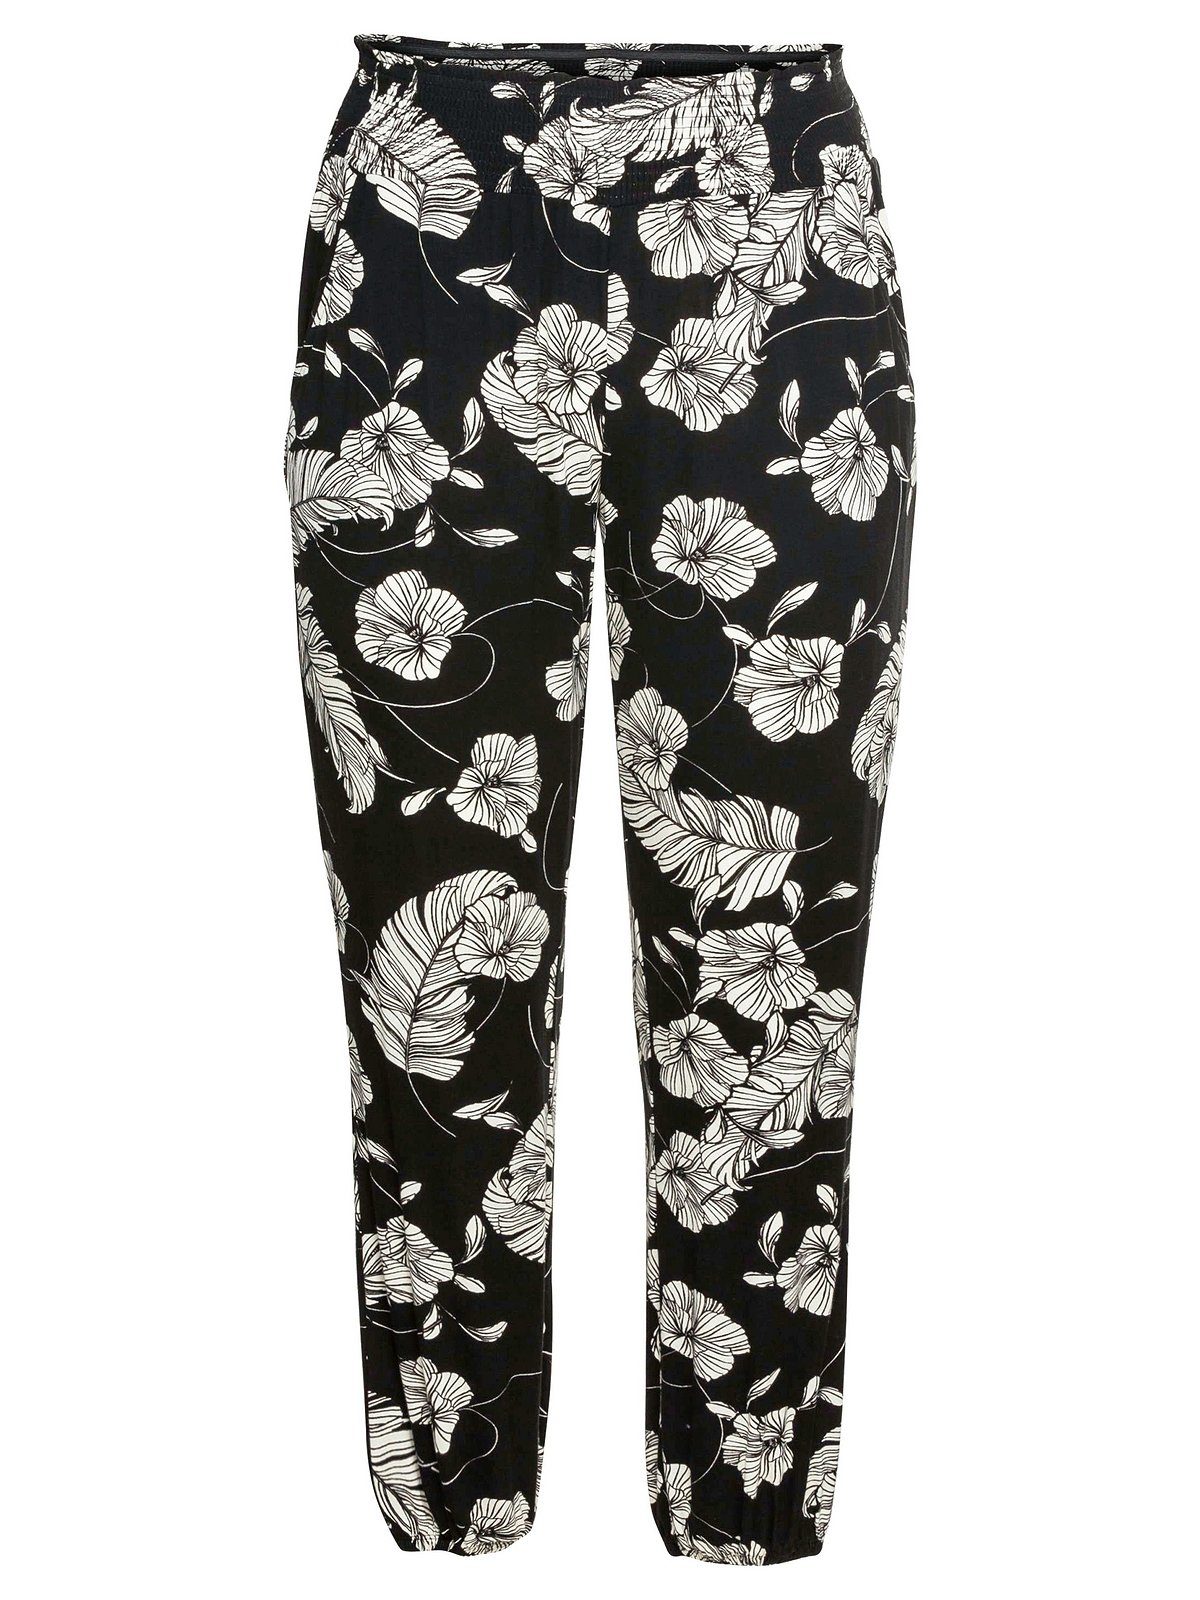 Schlupfhose Sheego schwarz-weiß Große Größen Joggpants-Stil, mit im Alloverprint